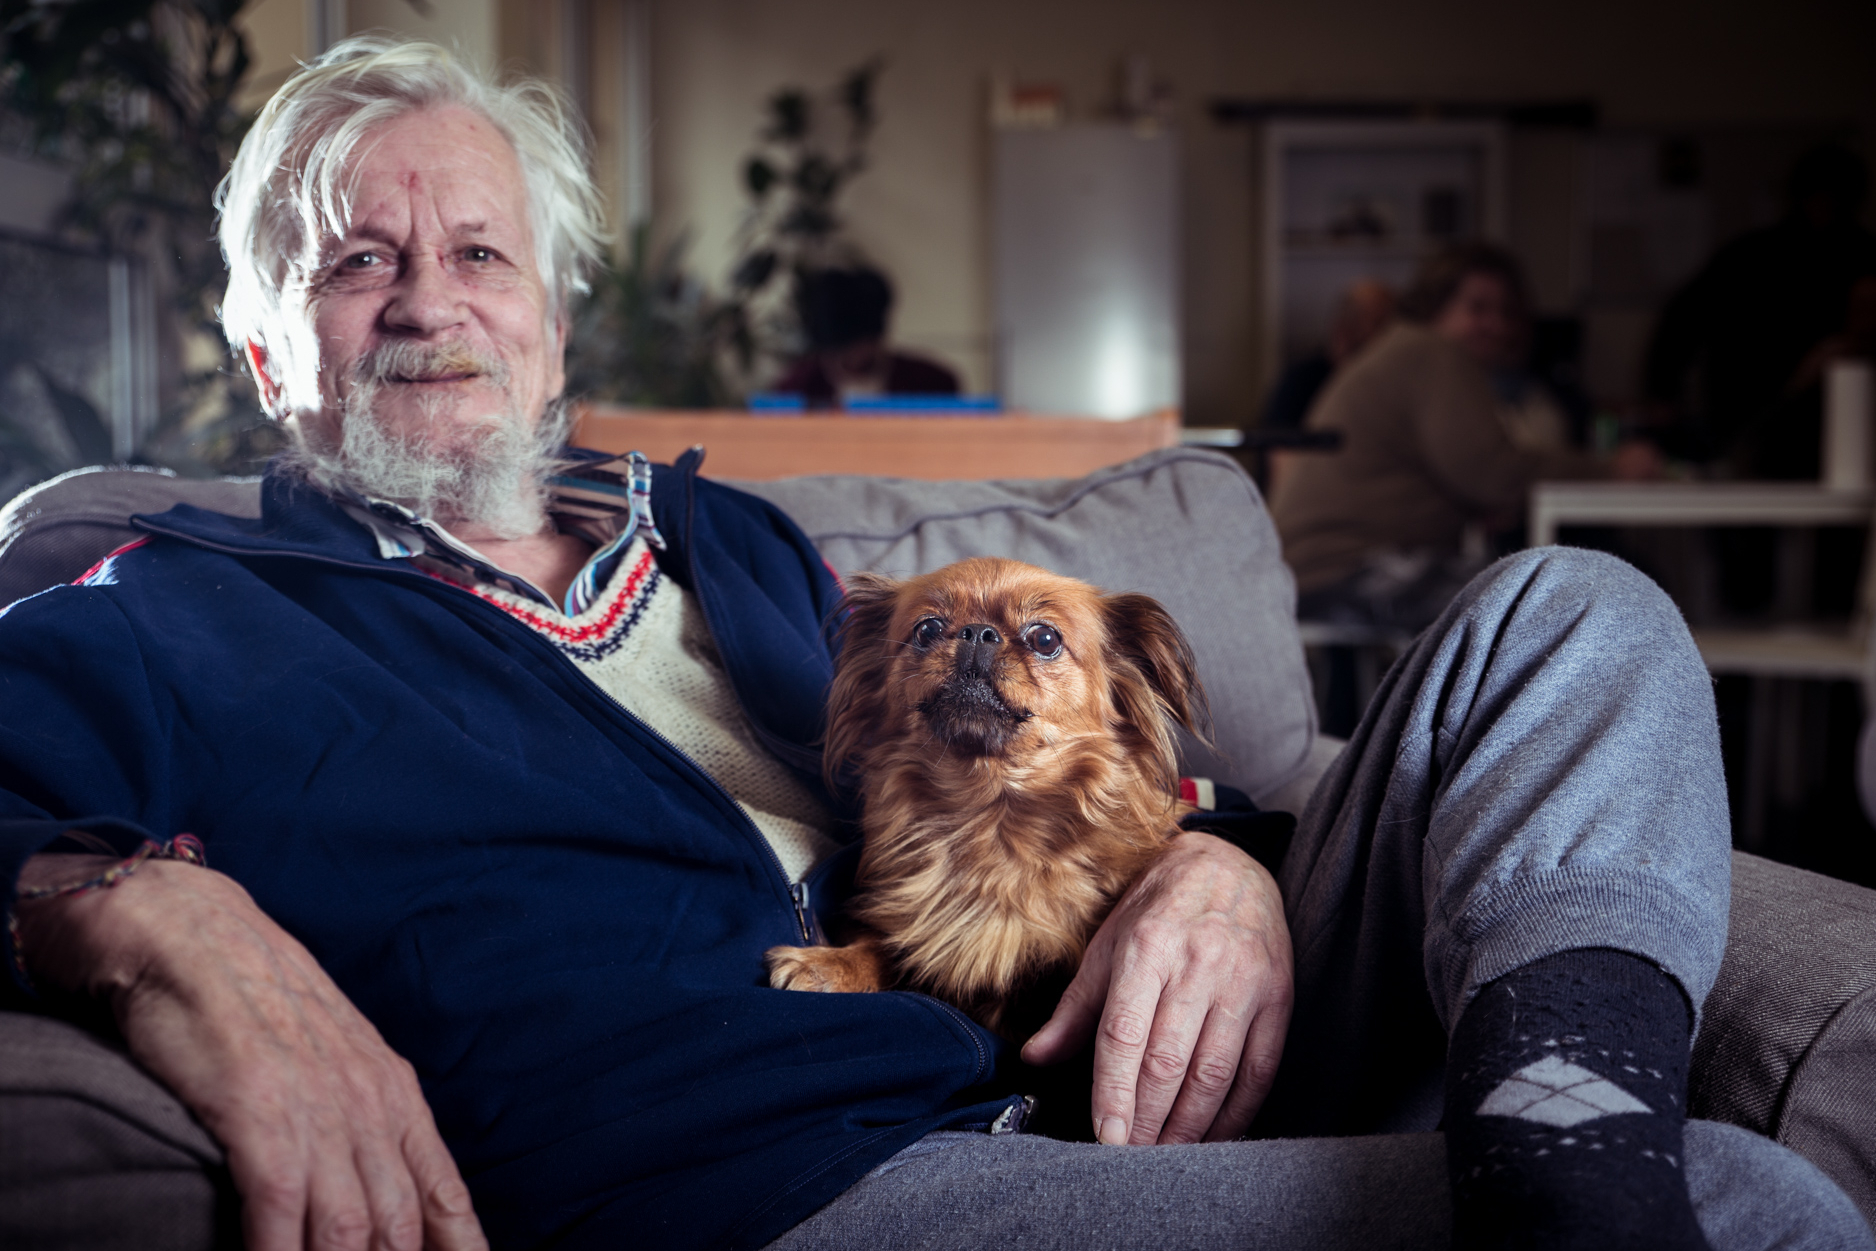 Bewohner einer Wohnungsloseneinrichtung mit Hund am Schoß auf Sofa